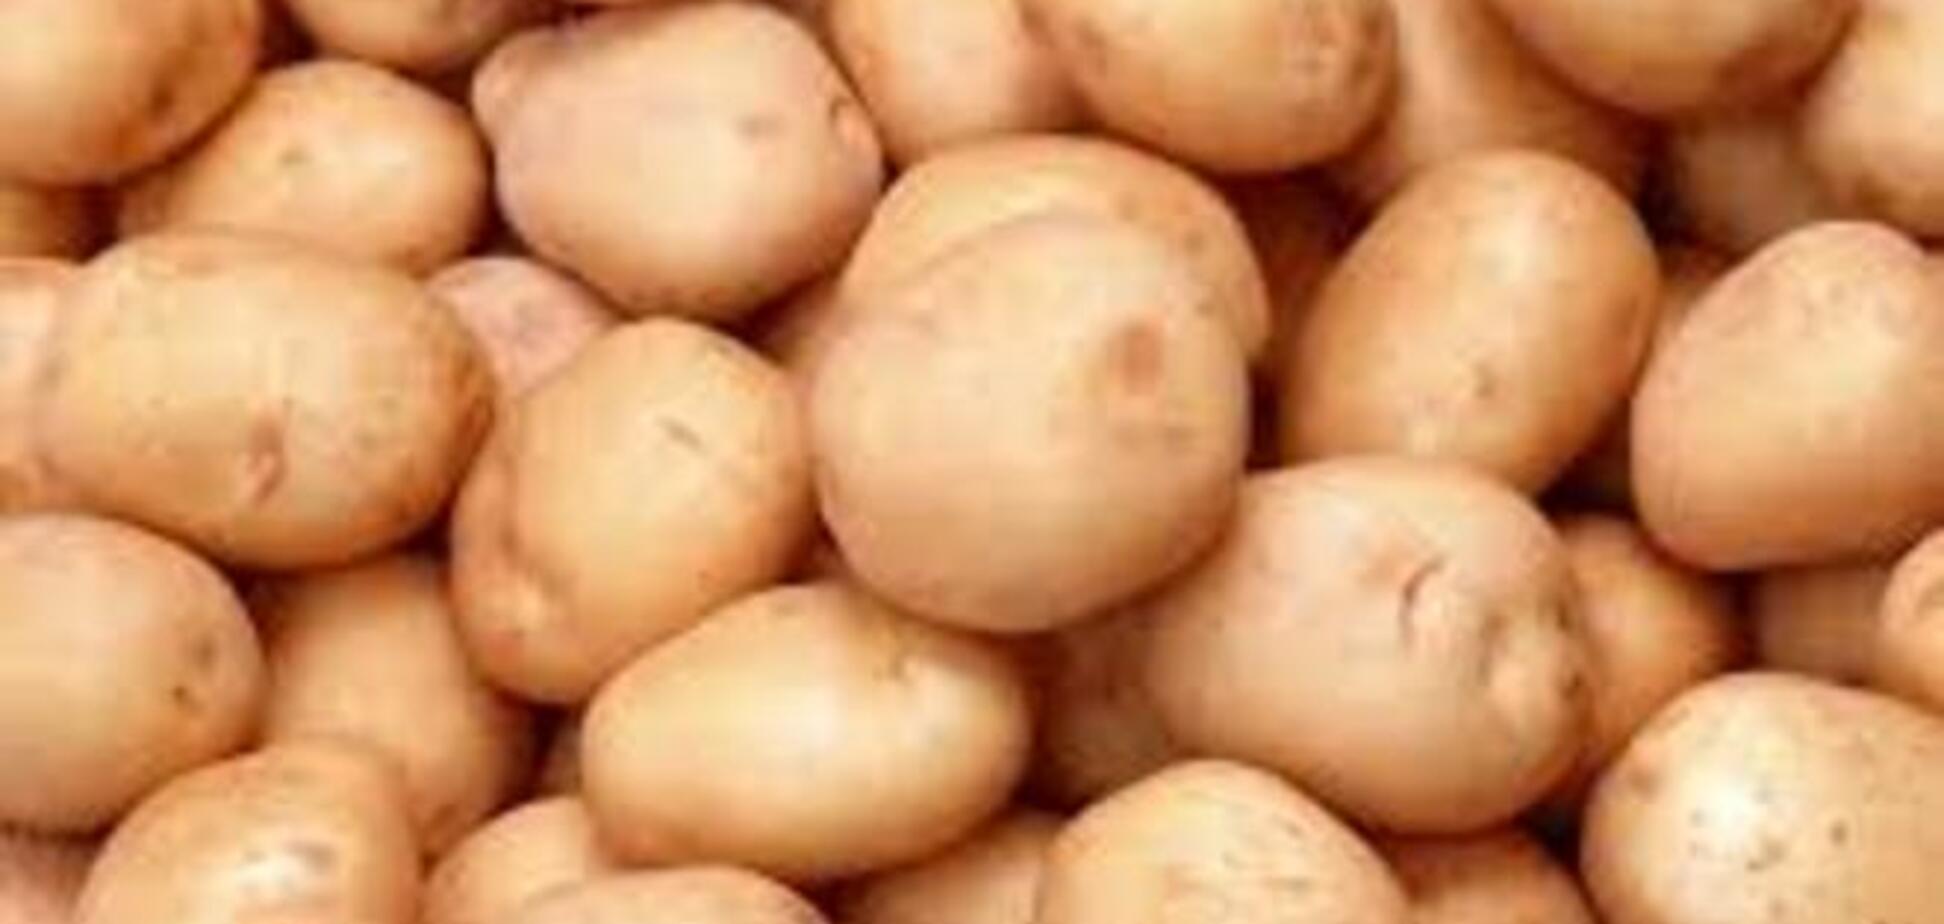 Росія порахувала українська картопля шкідливим для здоров'я своїх громадян